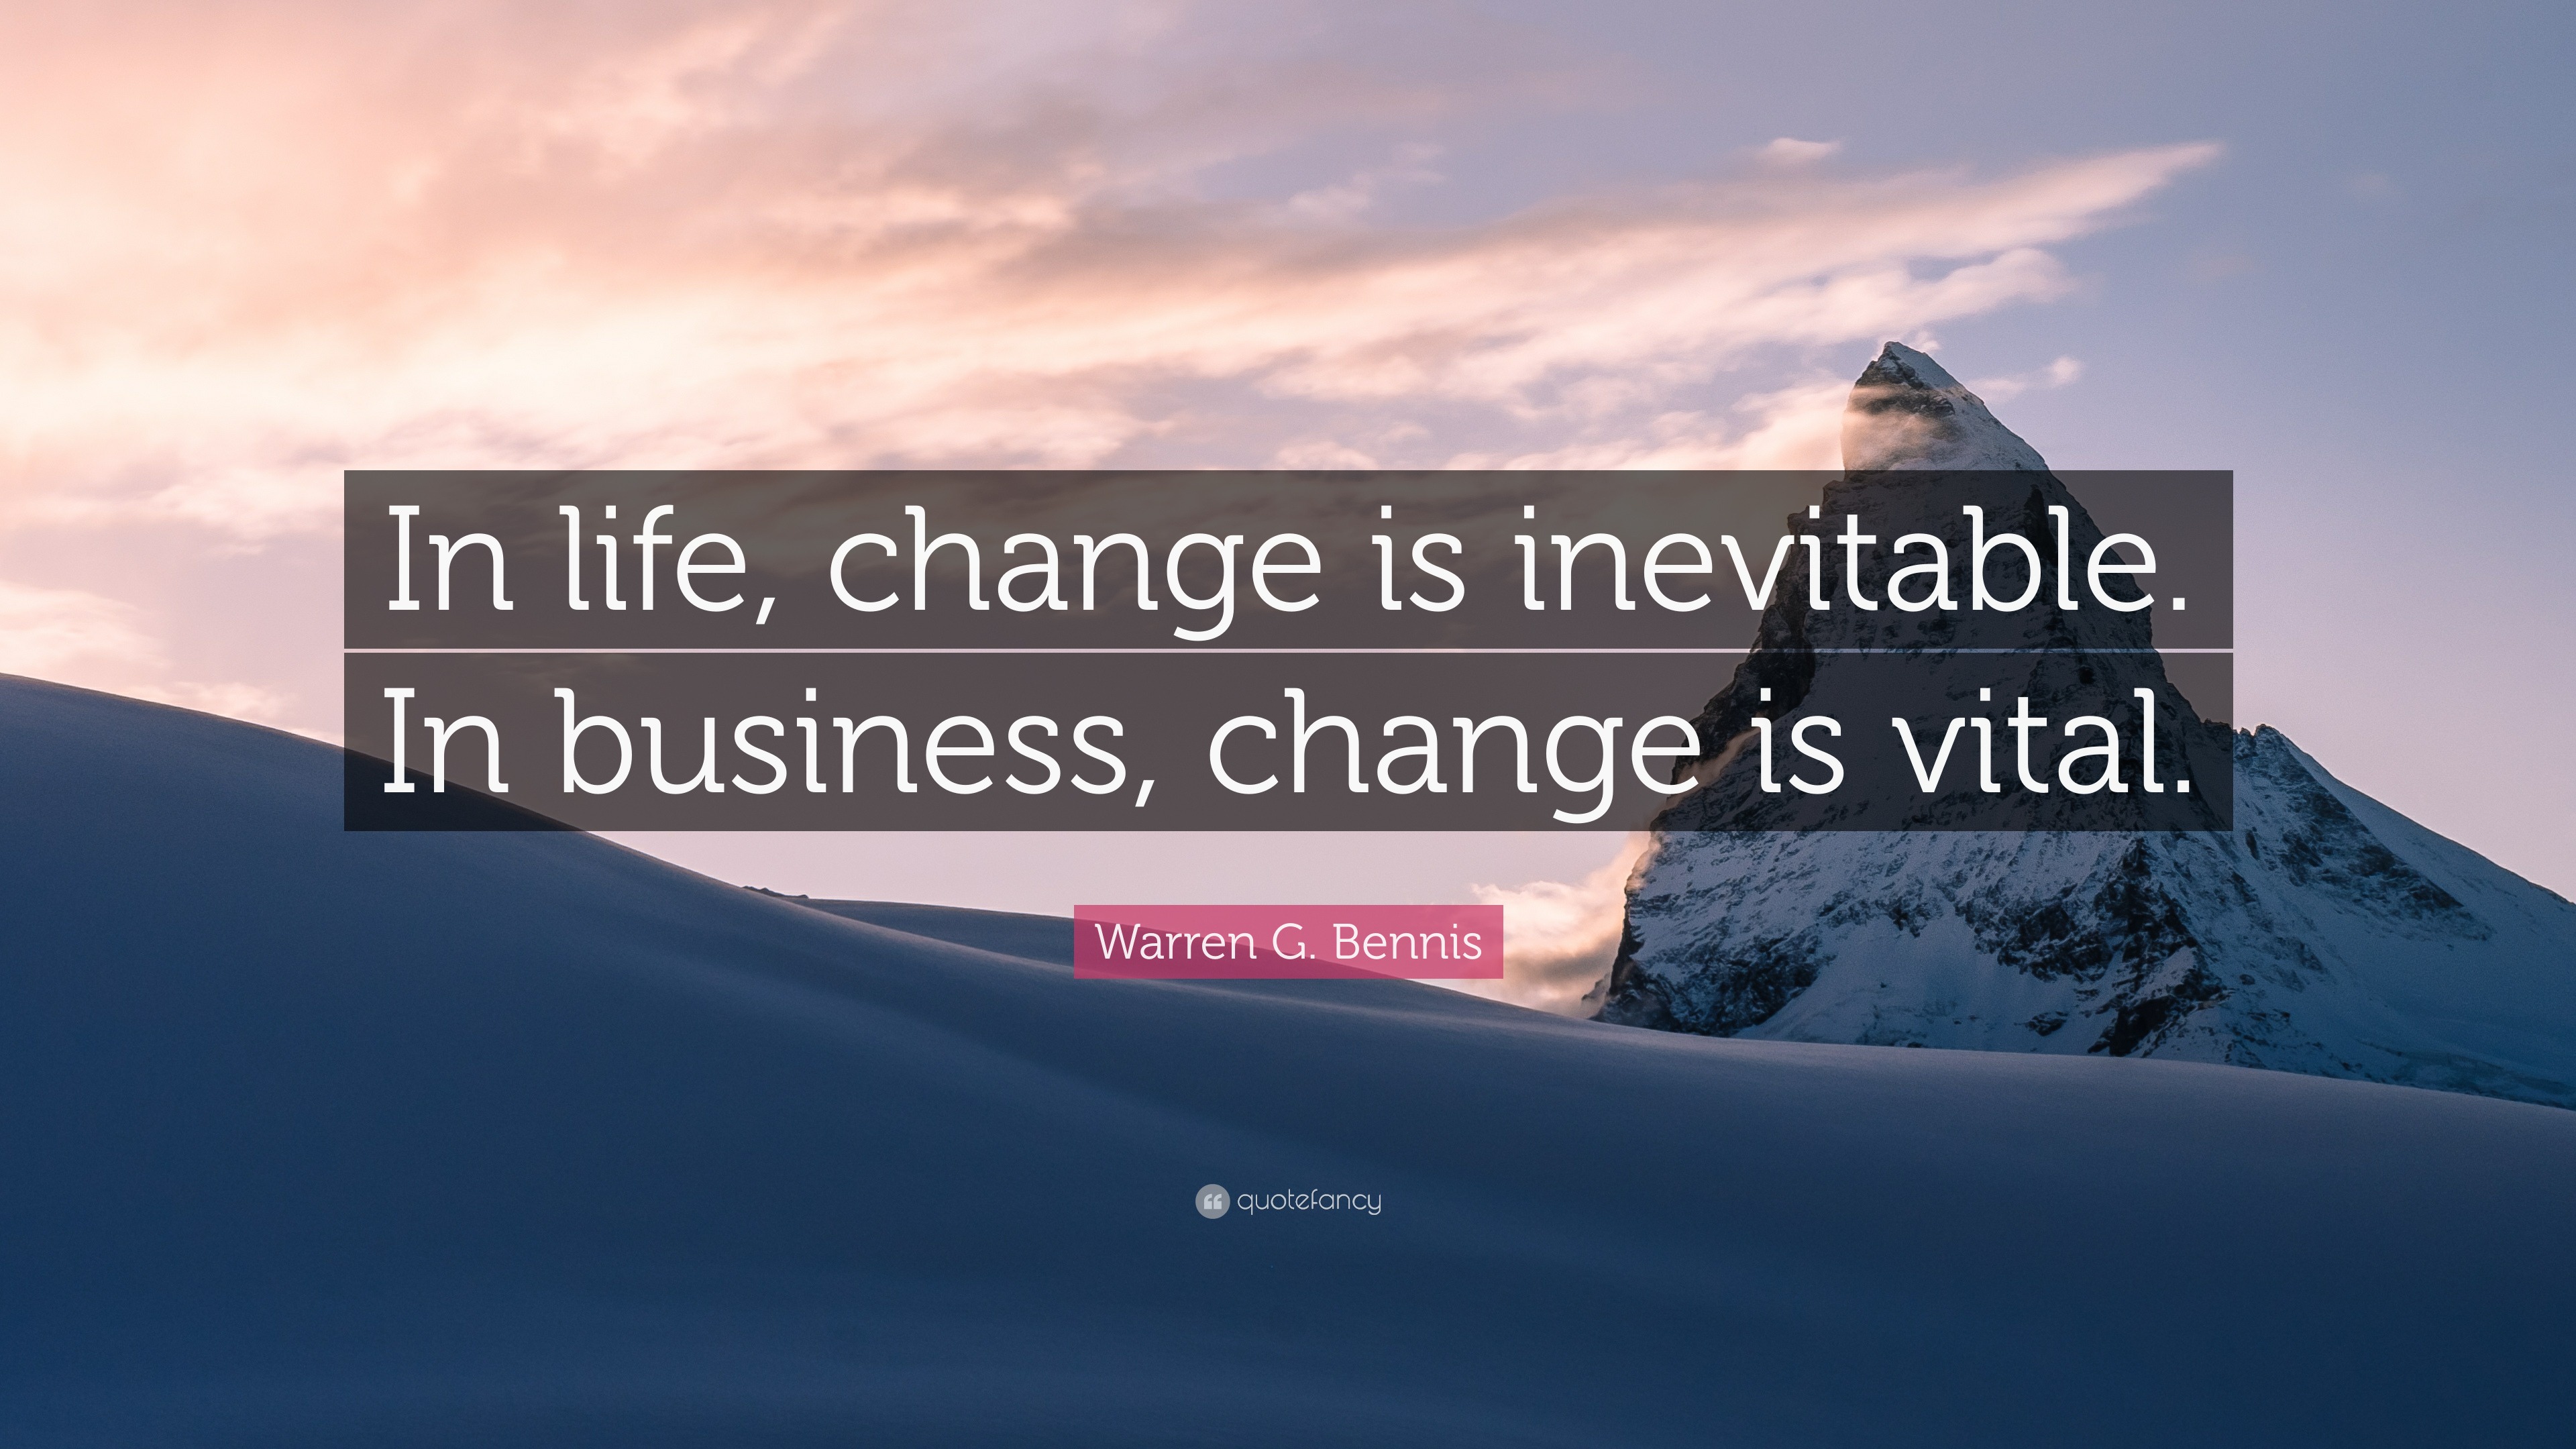 Warren G. Bennis Quote: “In life, change is inevitable. In business ...